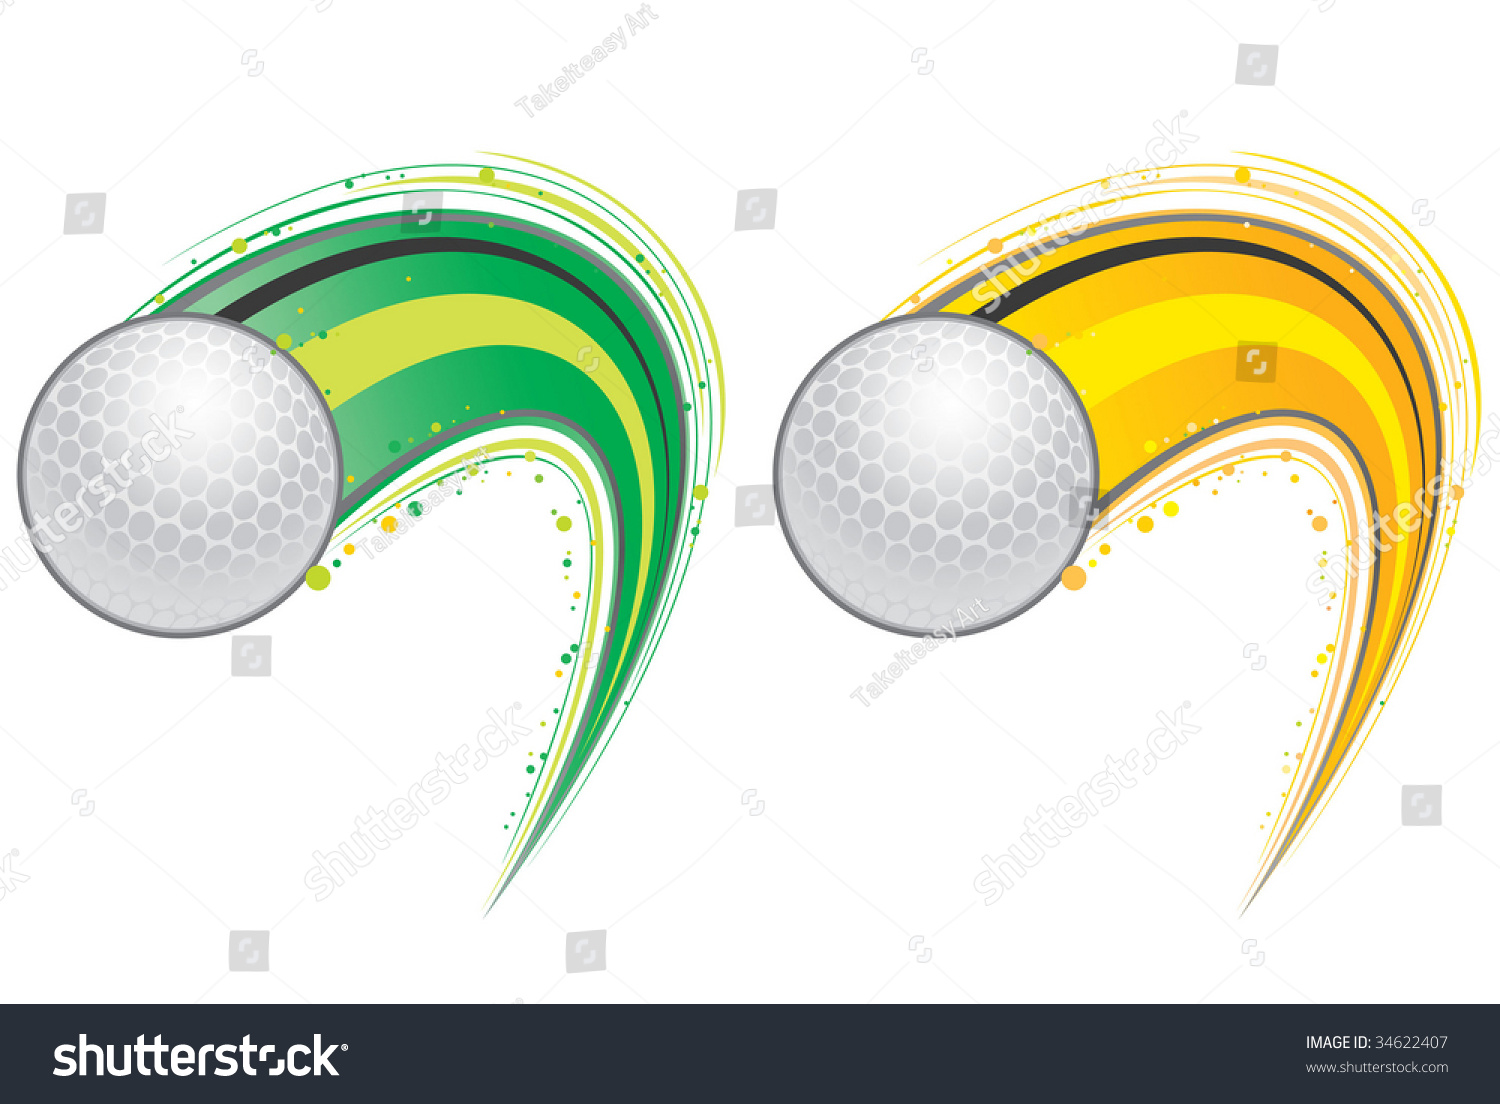 Flying Golf Ball Stock Vector 34622407 - Shutterstock